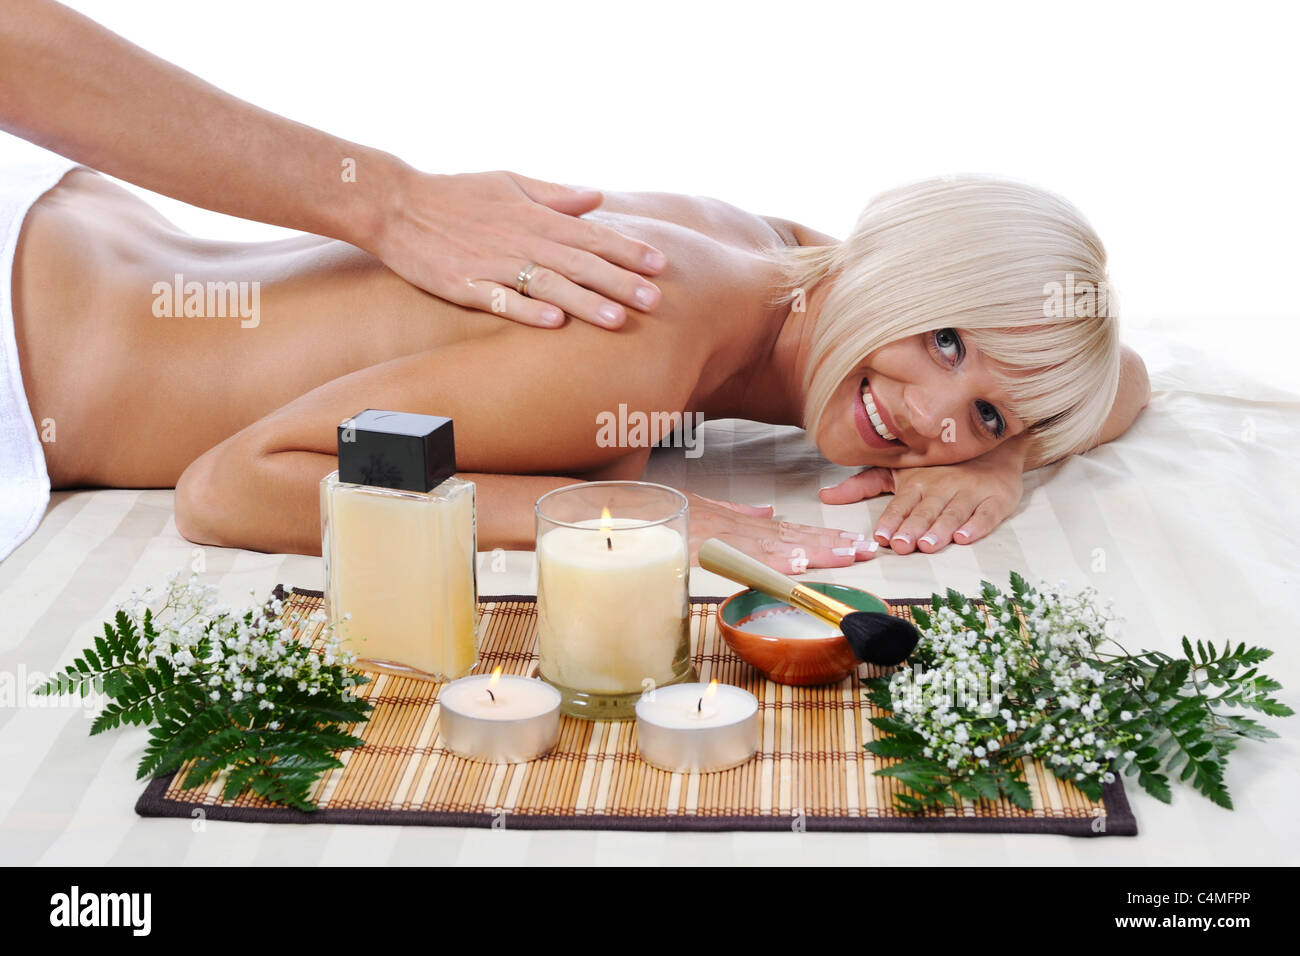 Massage in the spa salon Stock Photo